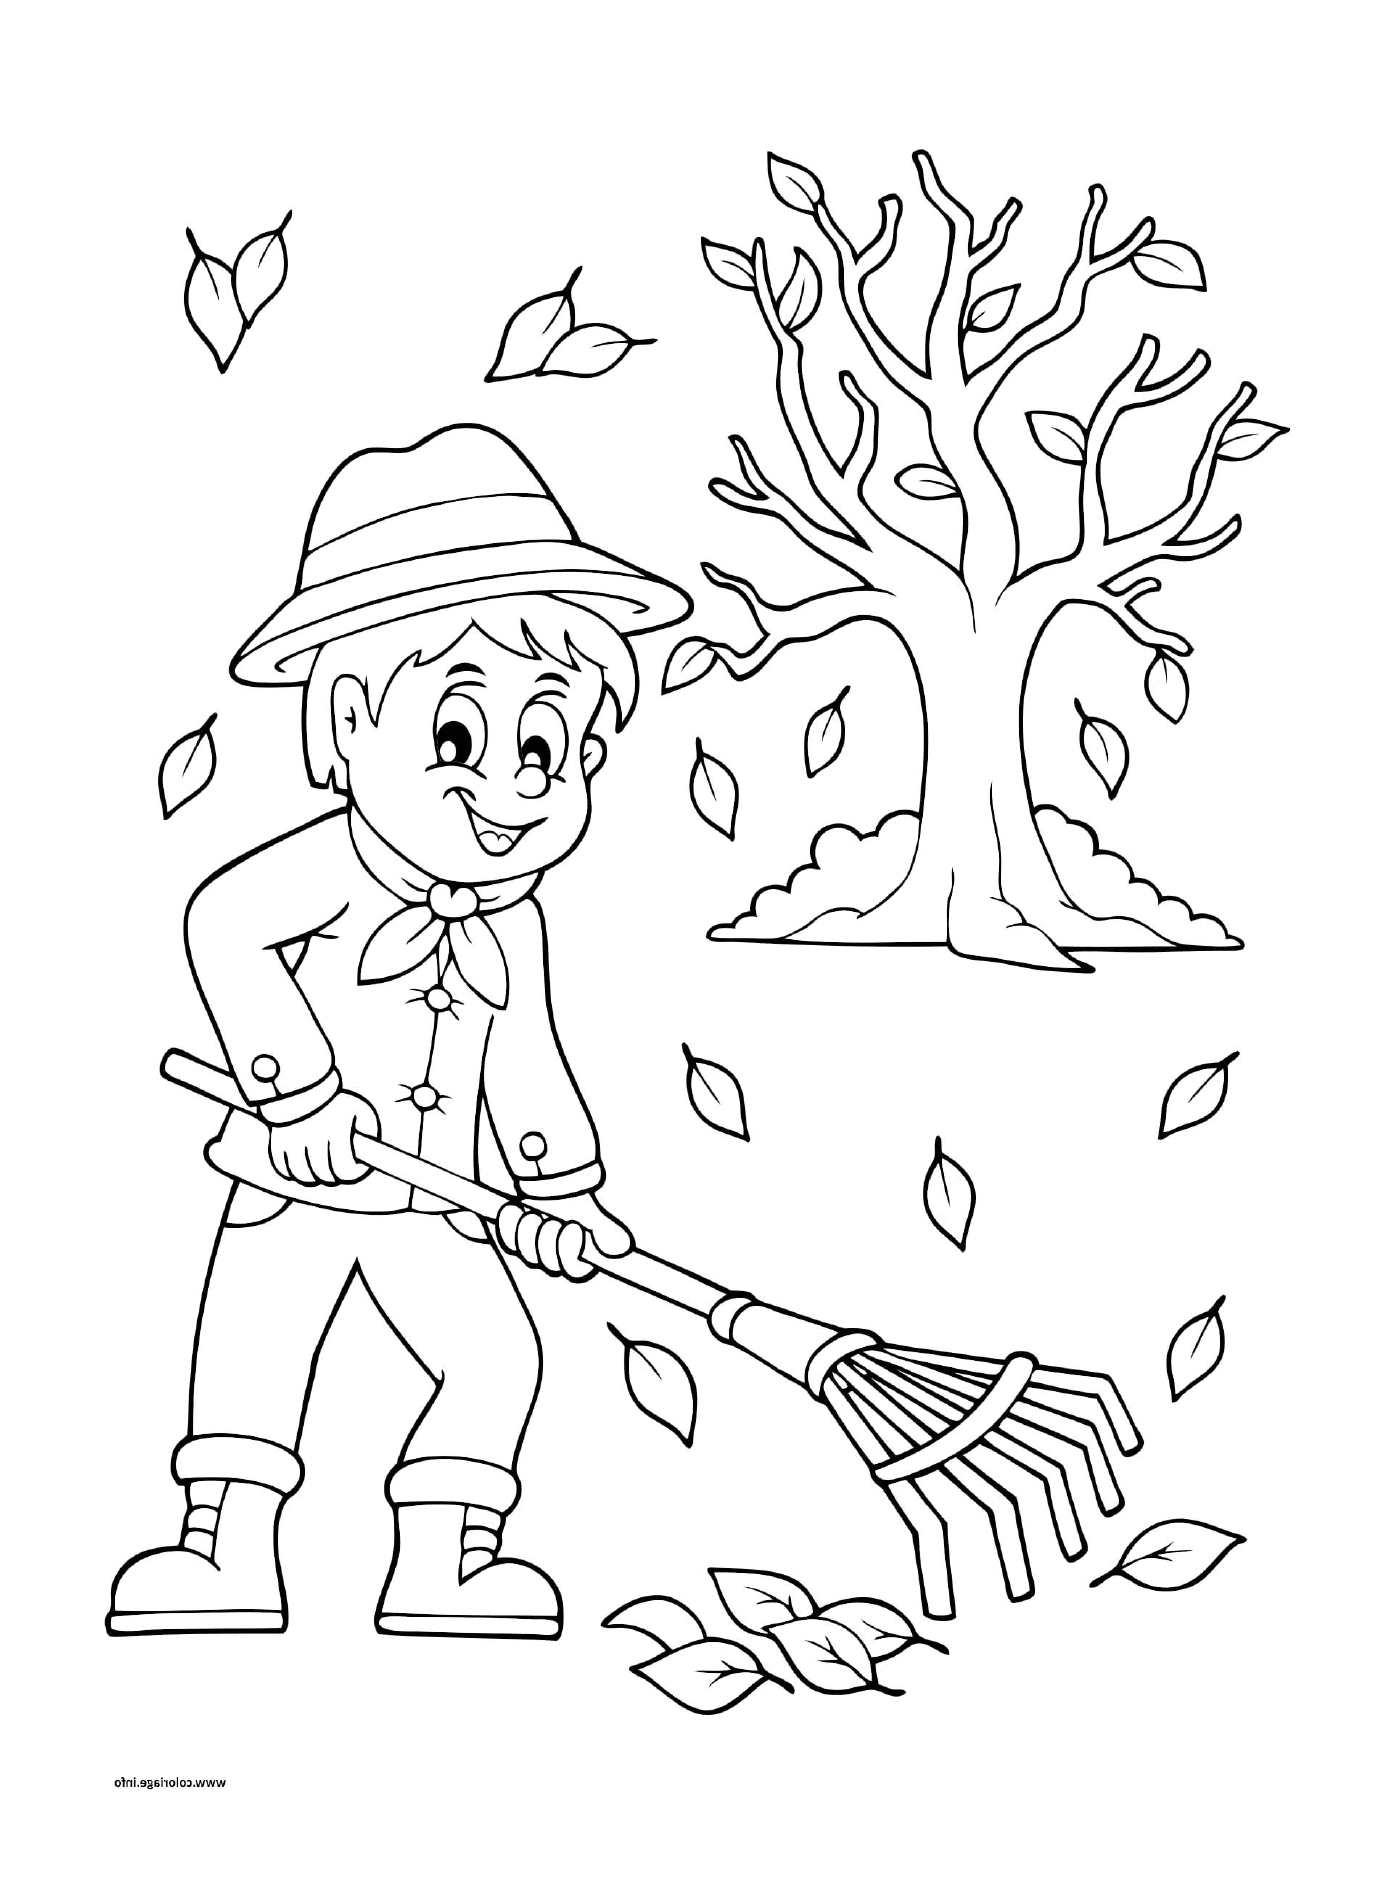   Un garçon qui ratisse les feuilles en automne 